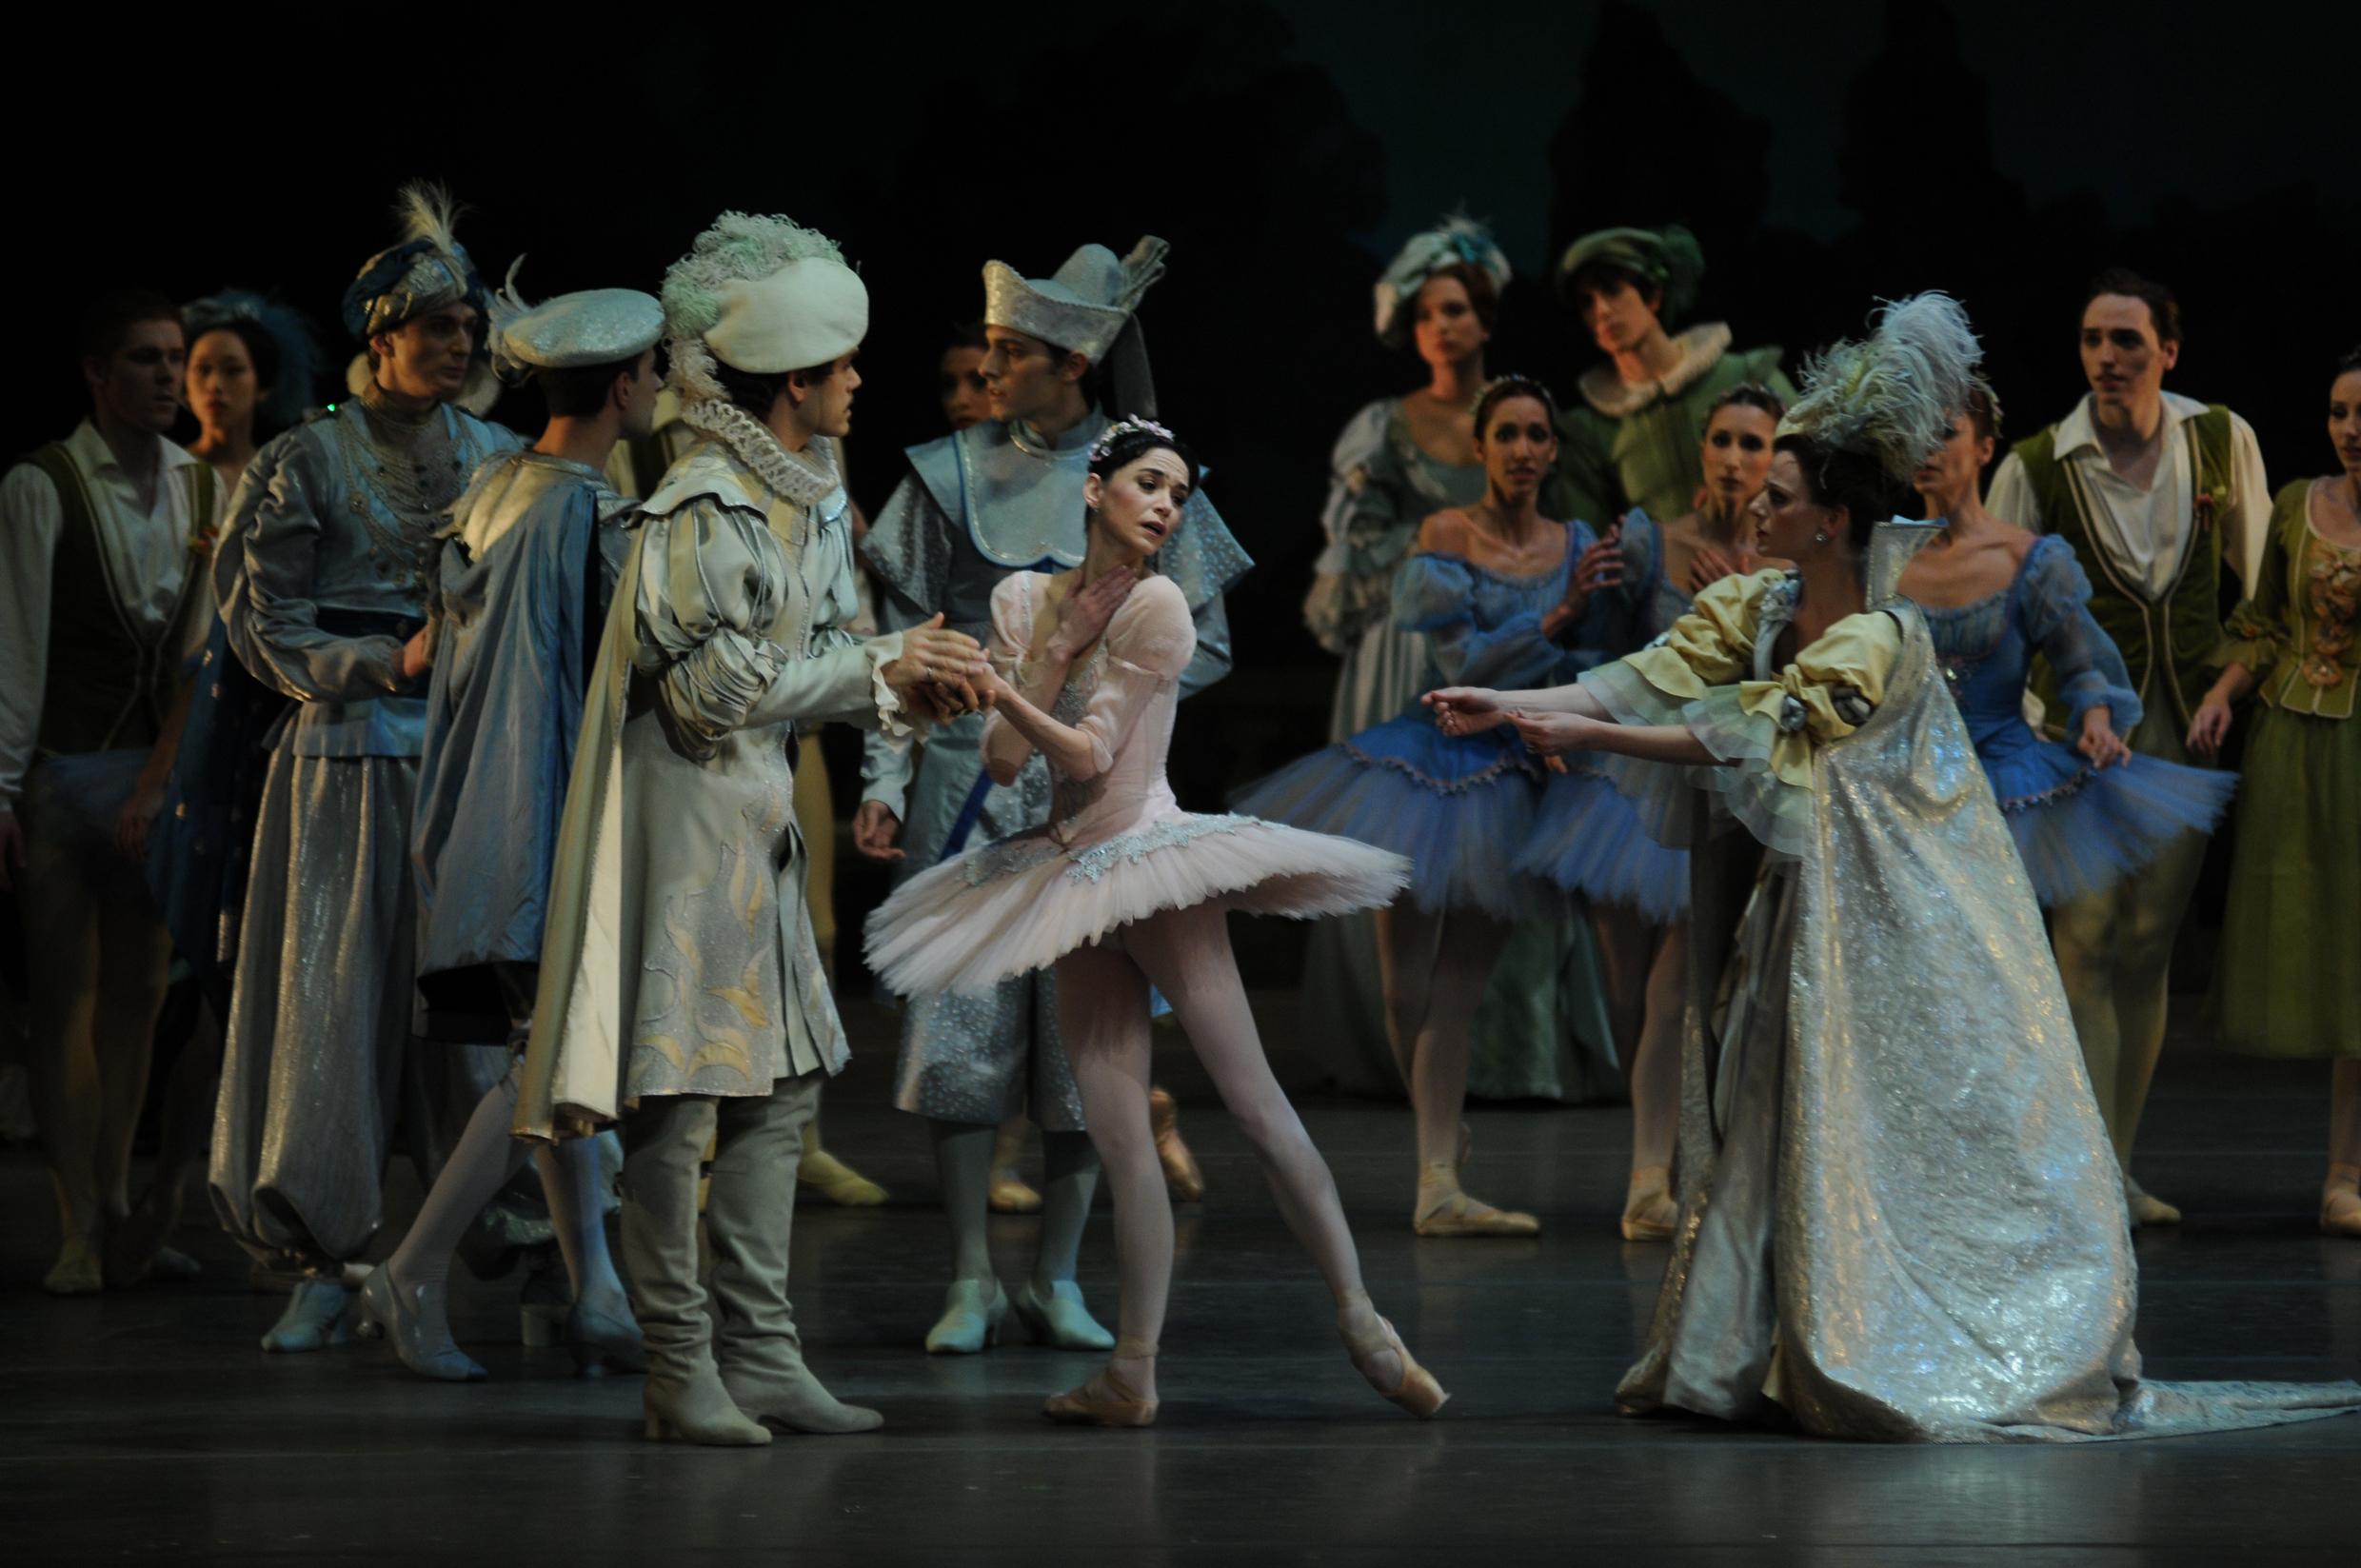 Le Ballet national reprend La Belle au bois dormant